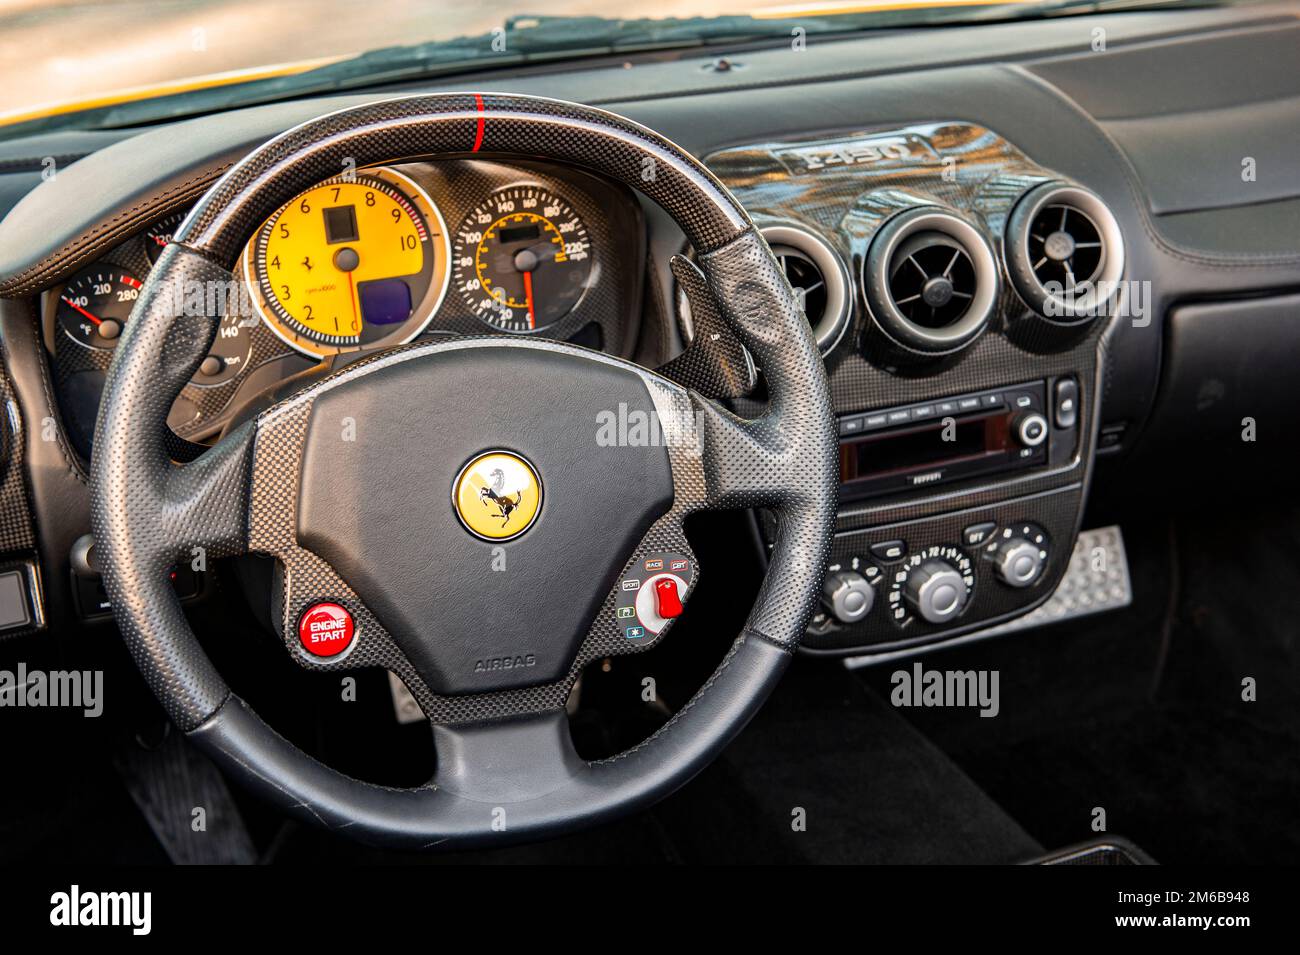 Innenansicht des Cockpits des Supersportwagens Ferrari F430 Spyder. Stockfoto